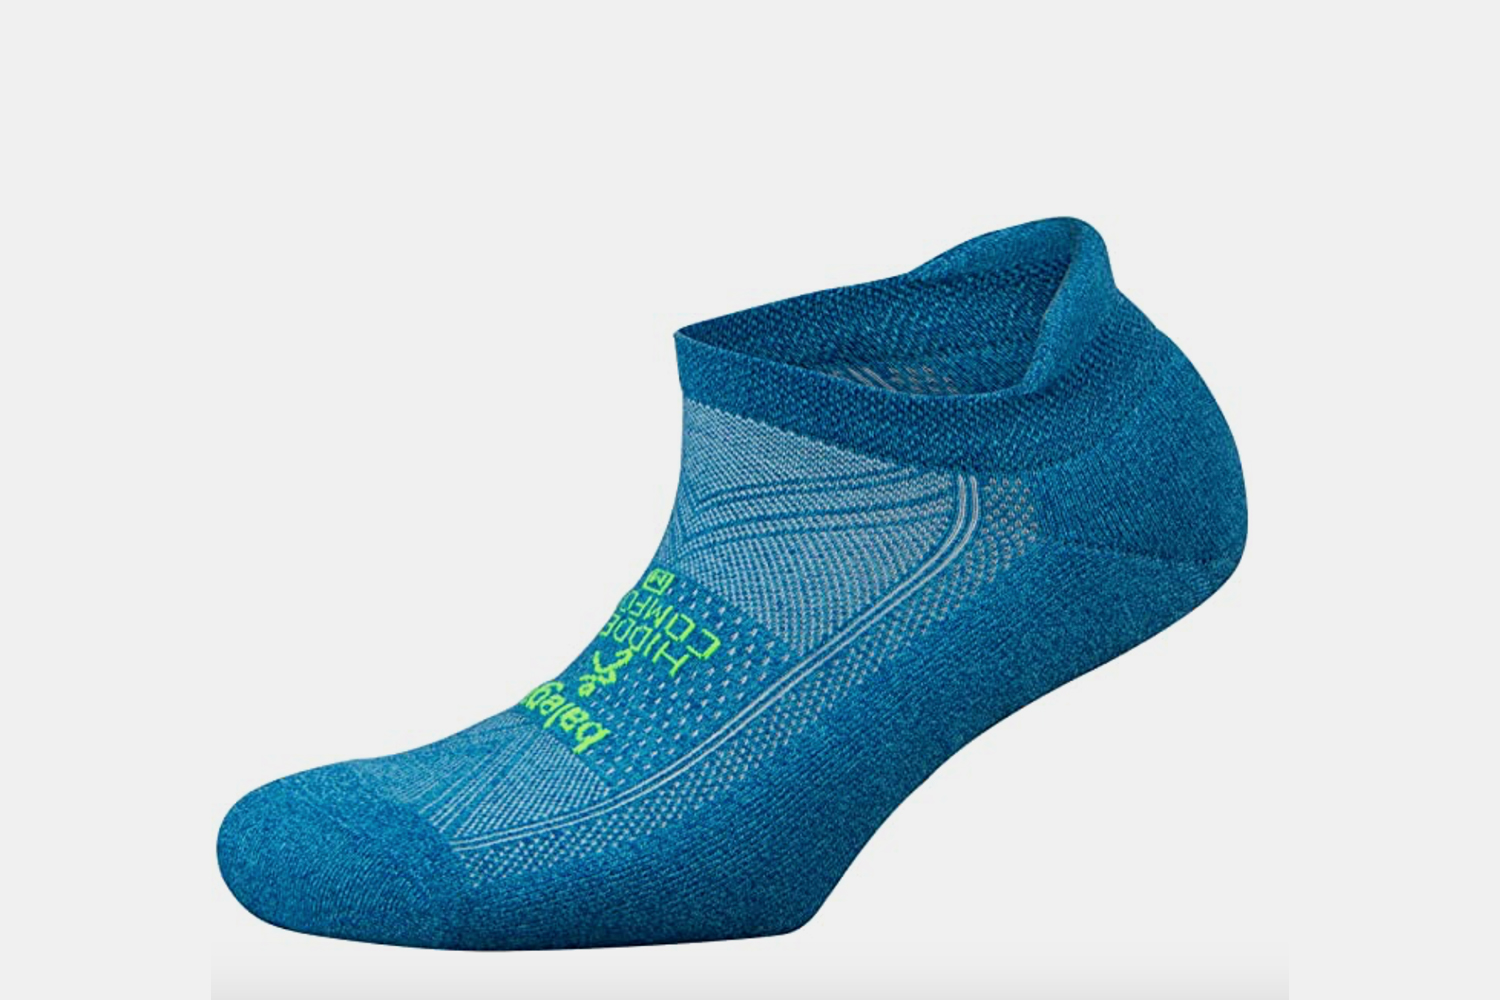 Balega Hidden Comfort No-Show Running Socks